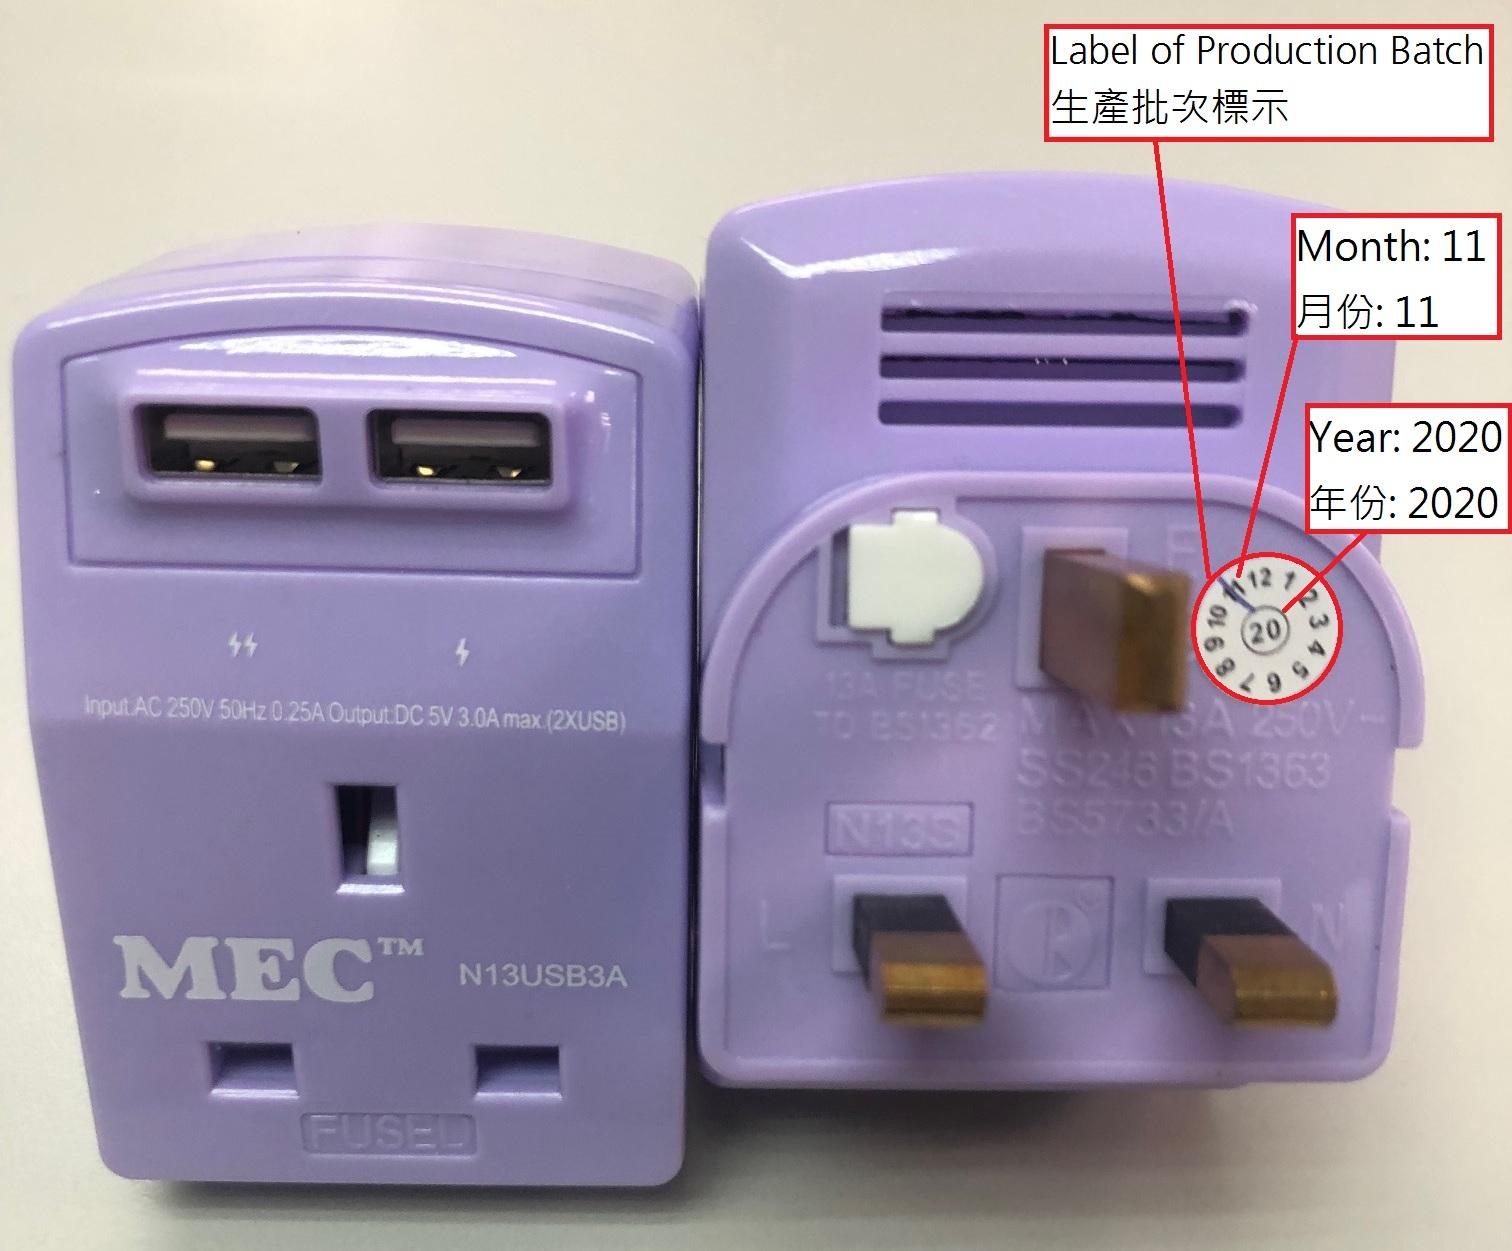 機電工程署今日（五月十三日）呼籲市民停用「MEC」牌一款型號為N13USB3A的適配接頭。圖示該款紫色適配接頭及產品標示。